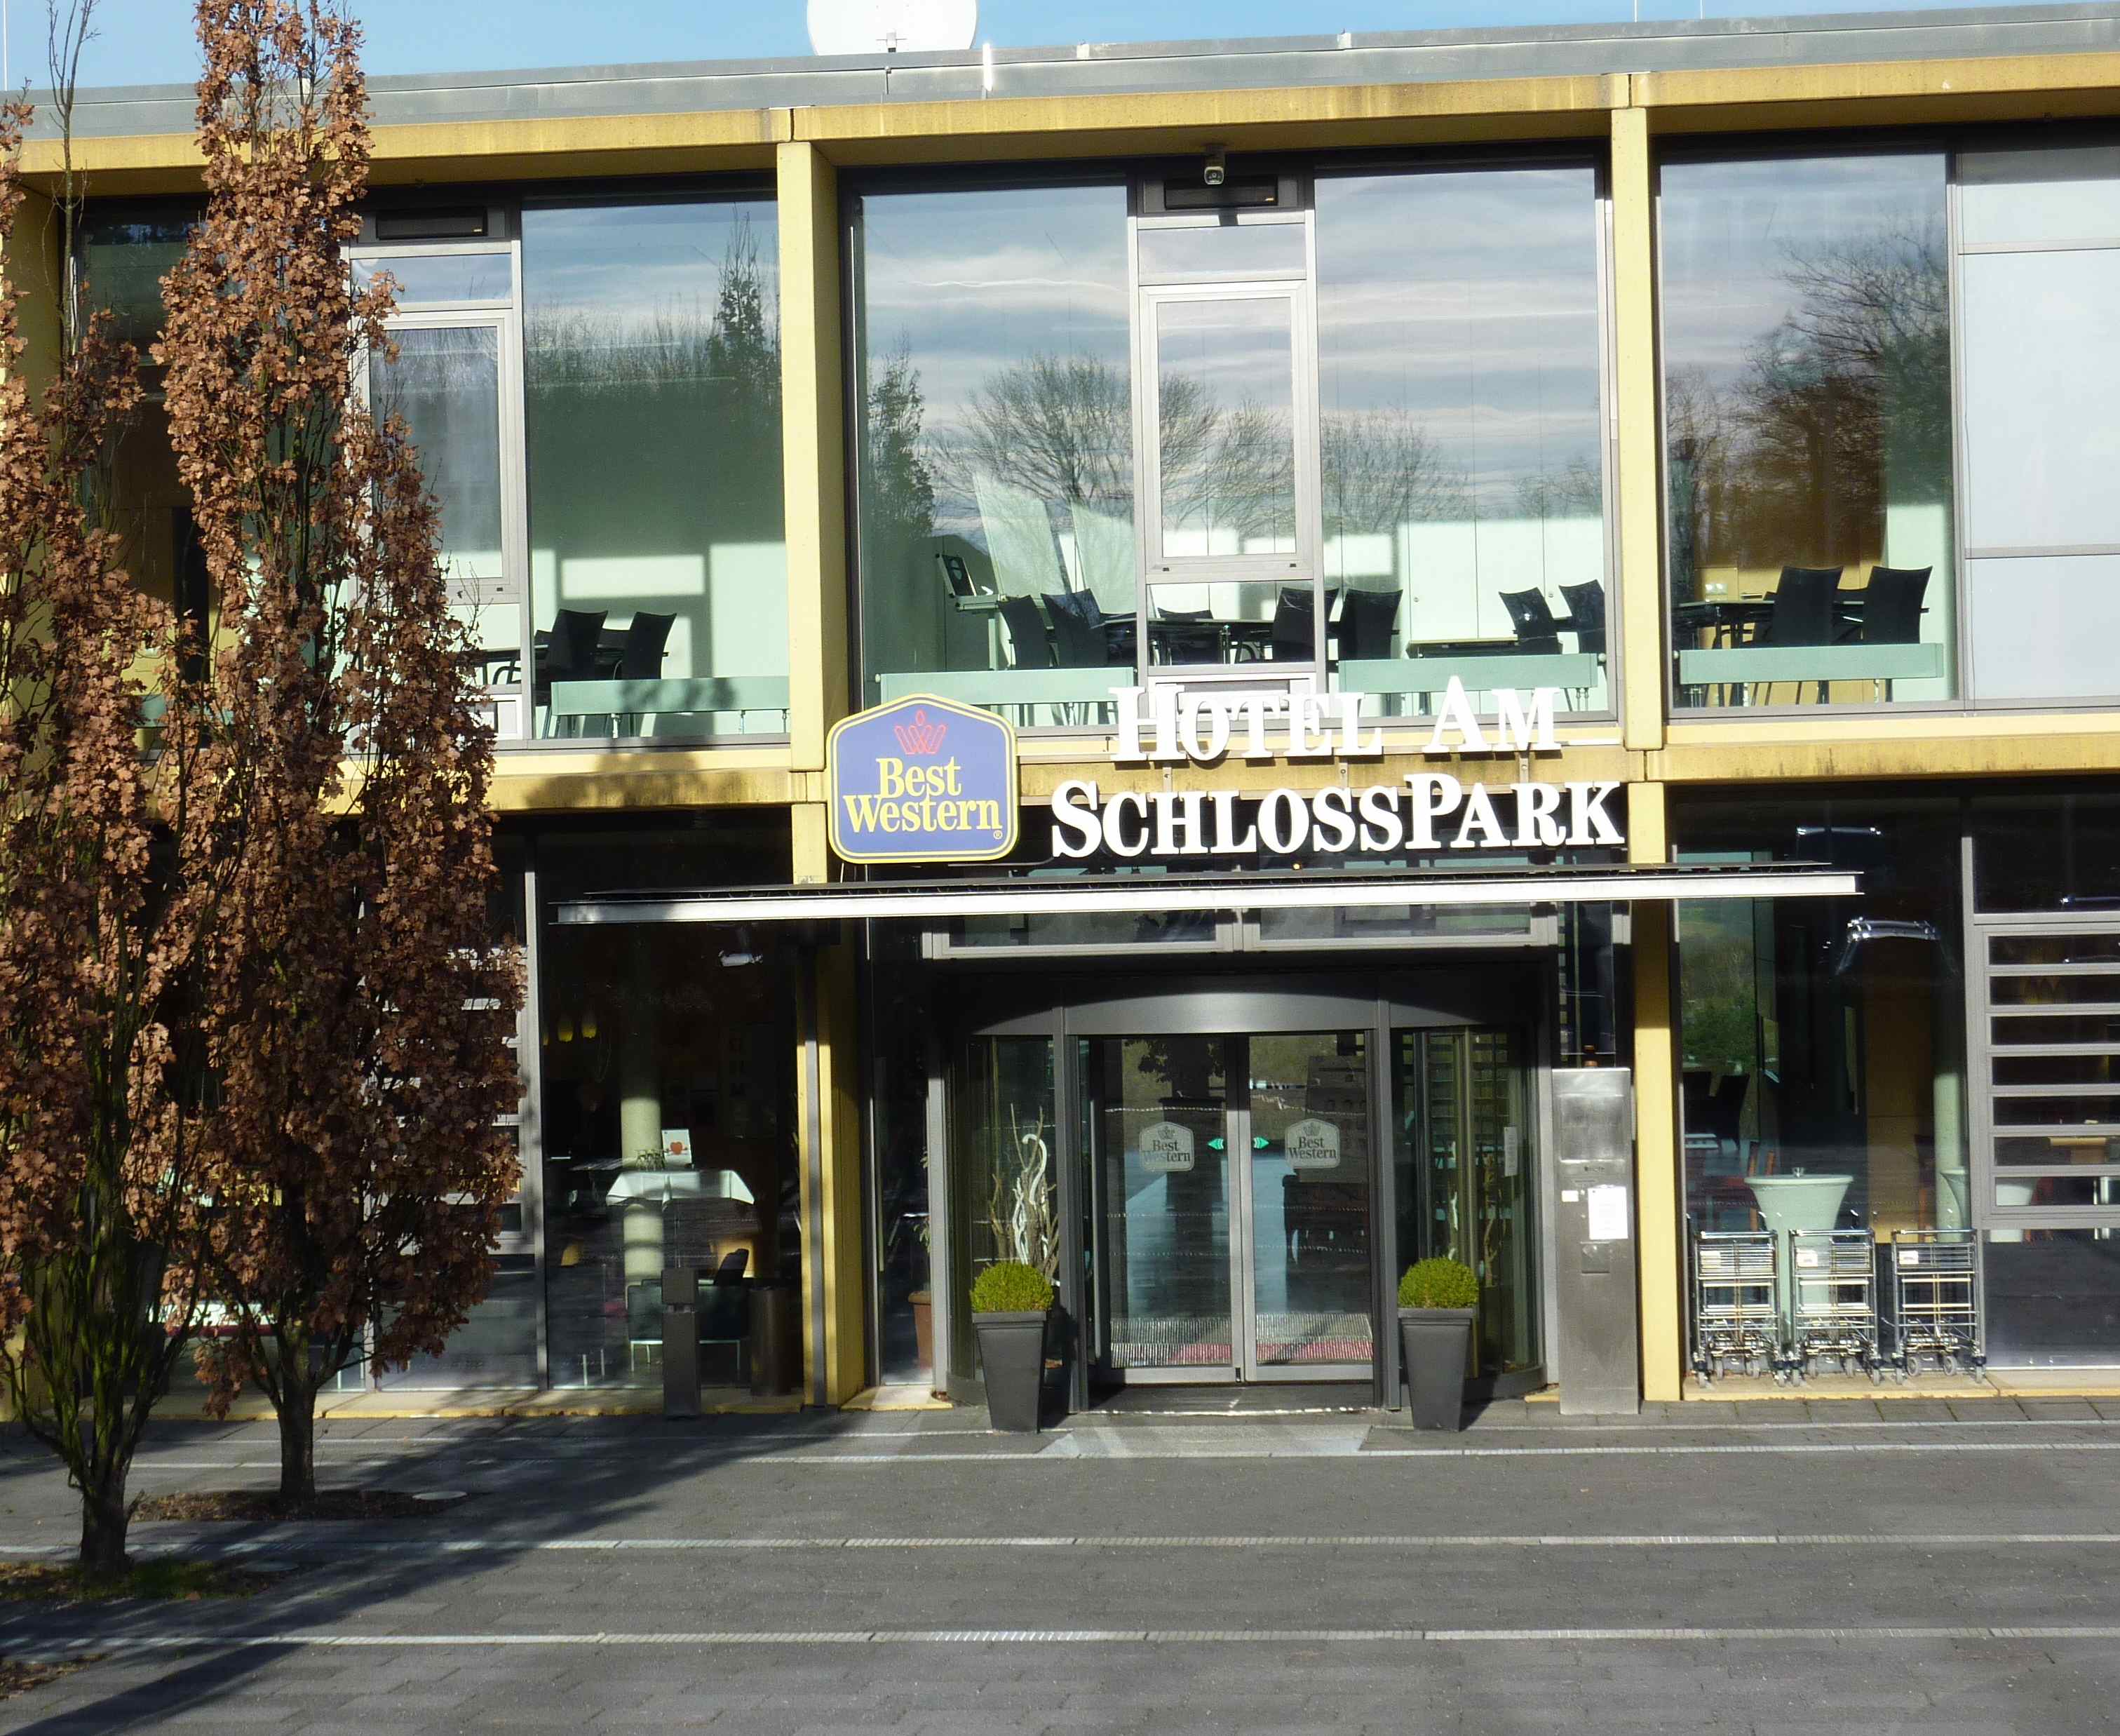 Best Western Hotel Lichtenwalde
Eingang